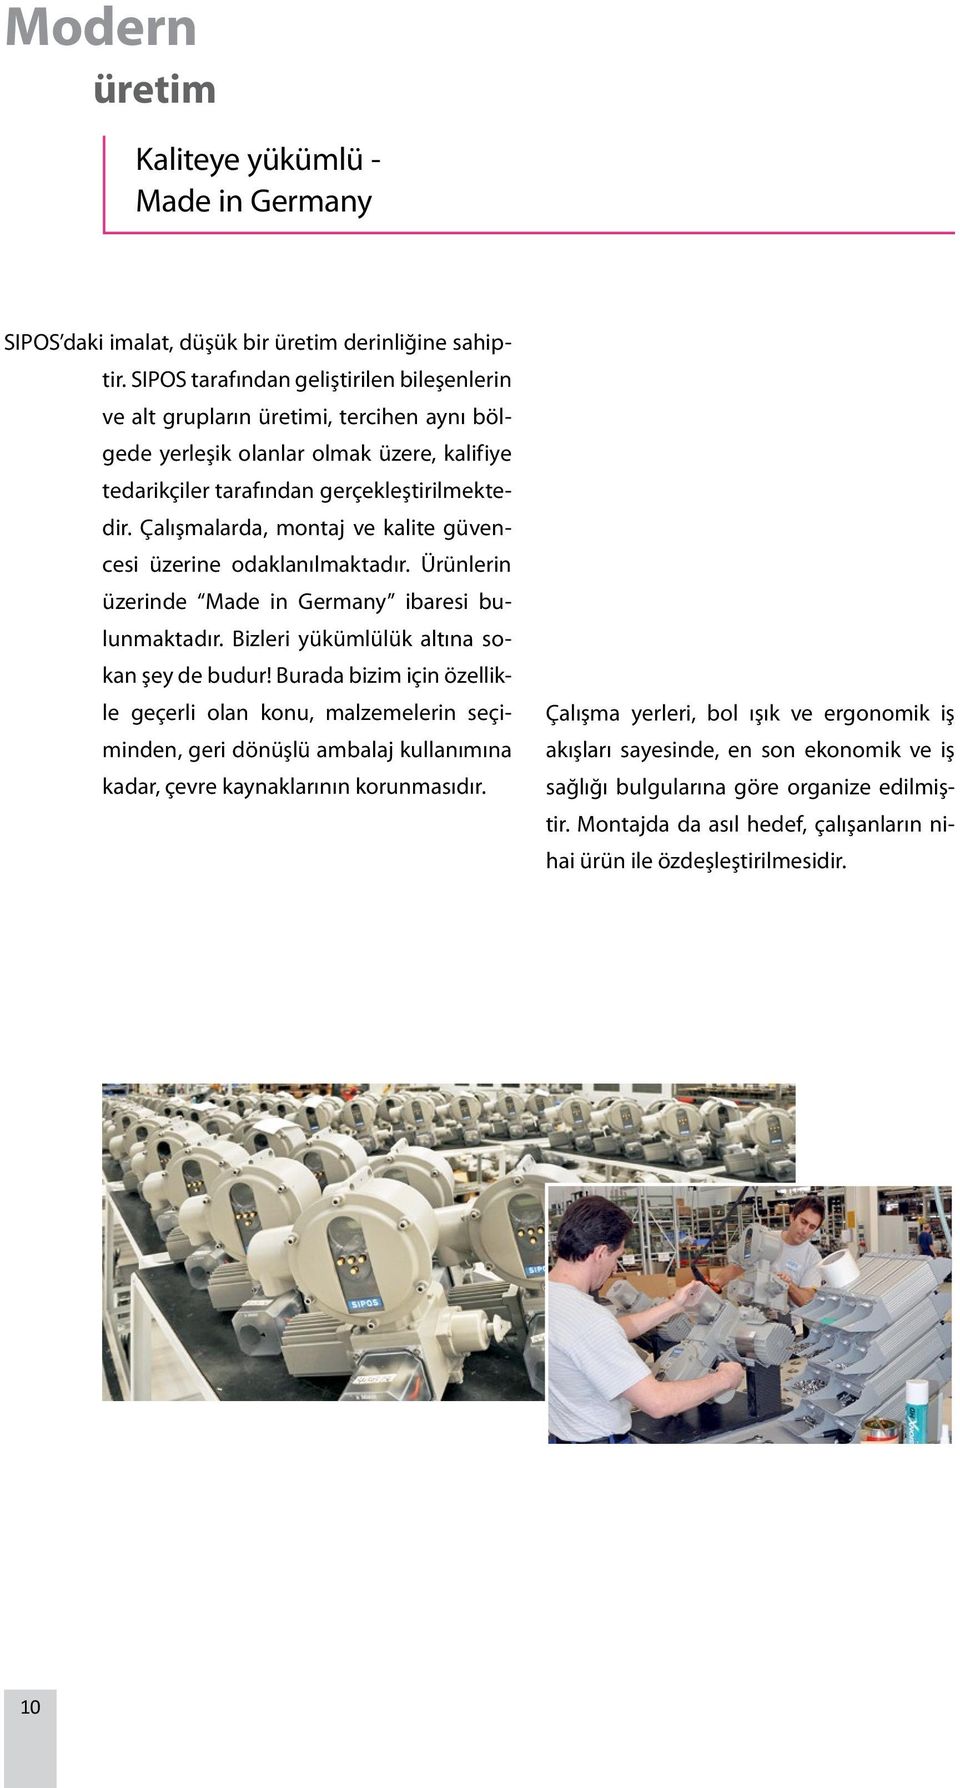 Çalışmalarda, montaj ve kalite güvencesi üzerine odaklanılmaktadır. Ürünlerin üzerinde Made in Germany ibaresi bulunmaktadır. Bizleri yükümlülük altına sokan şey de budur!